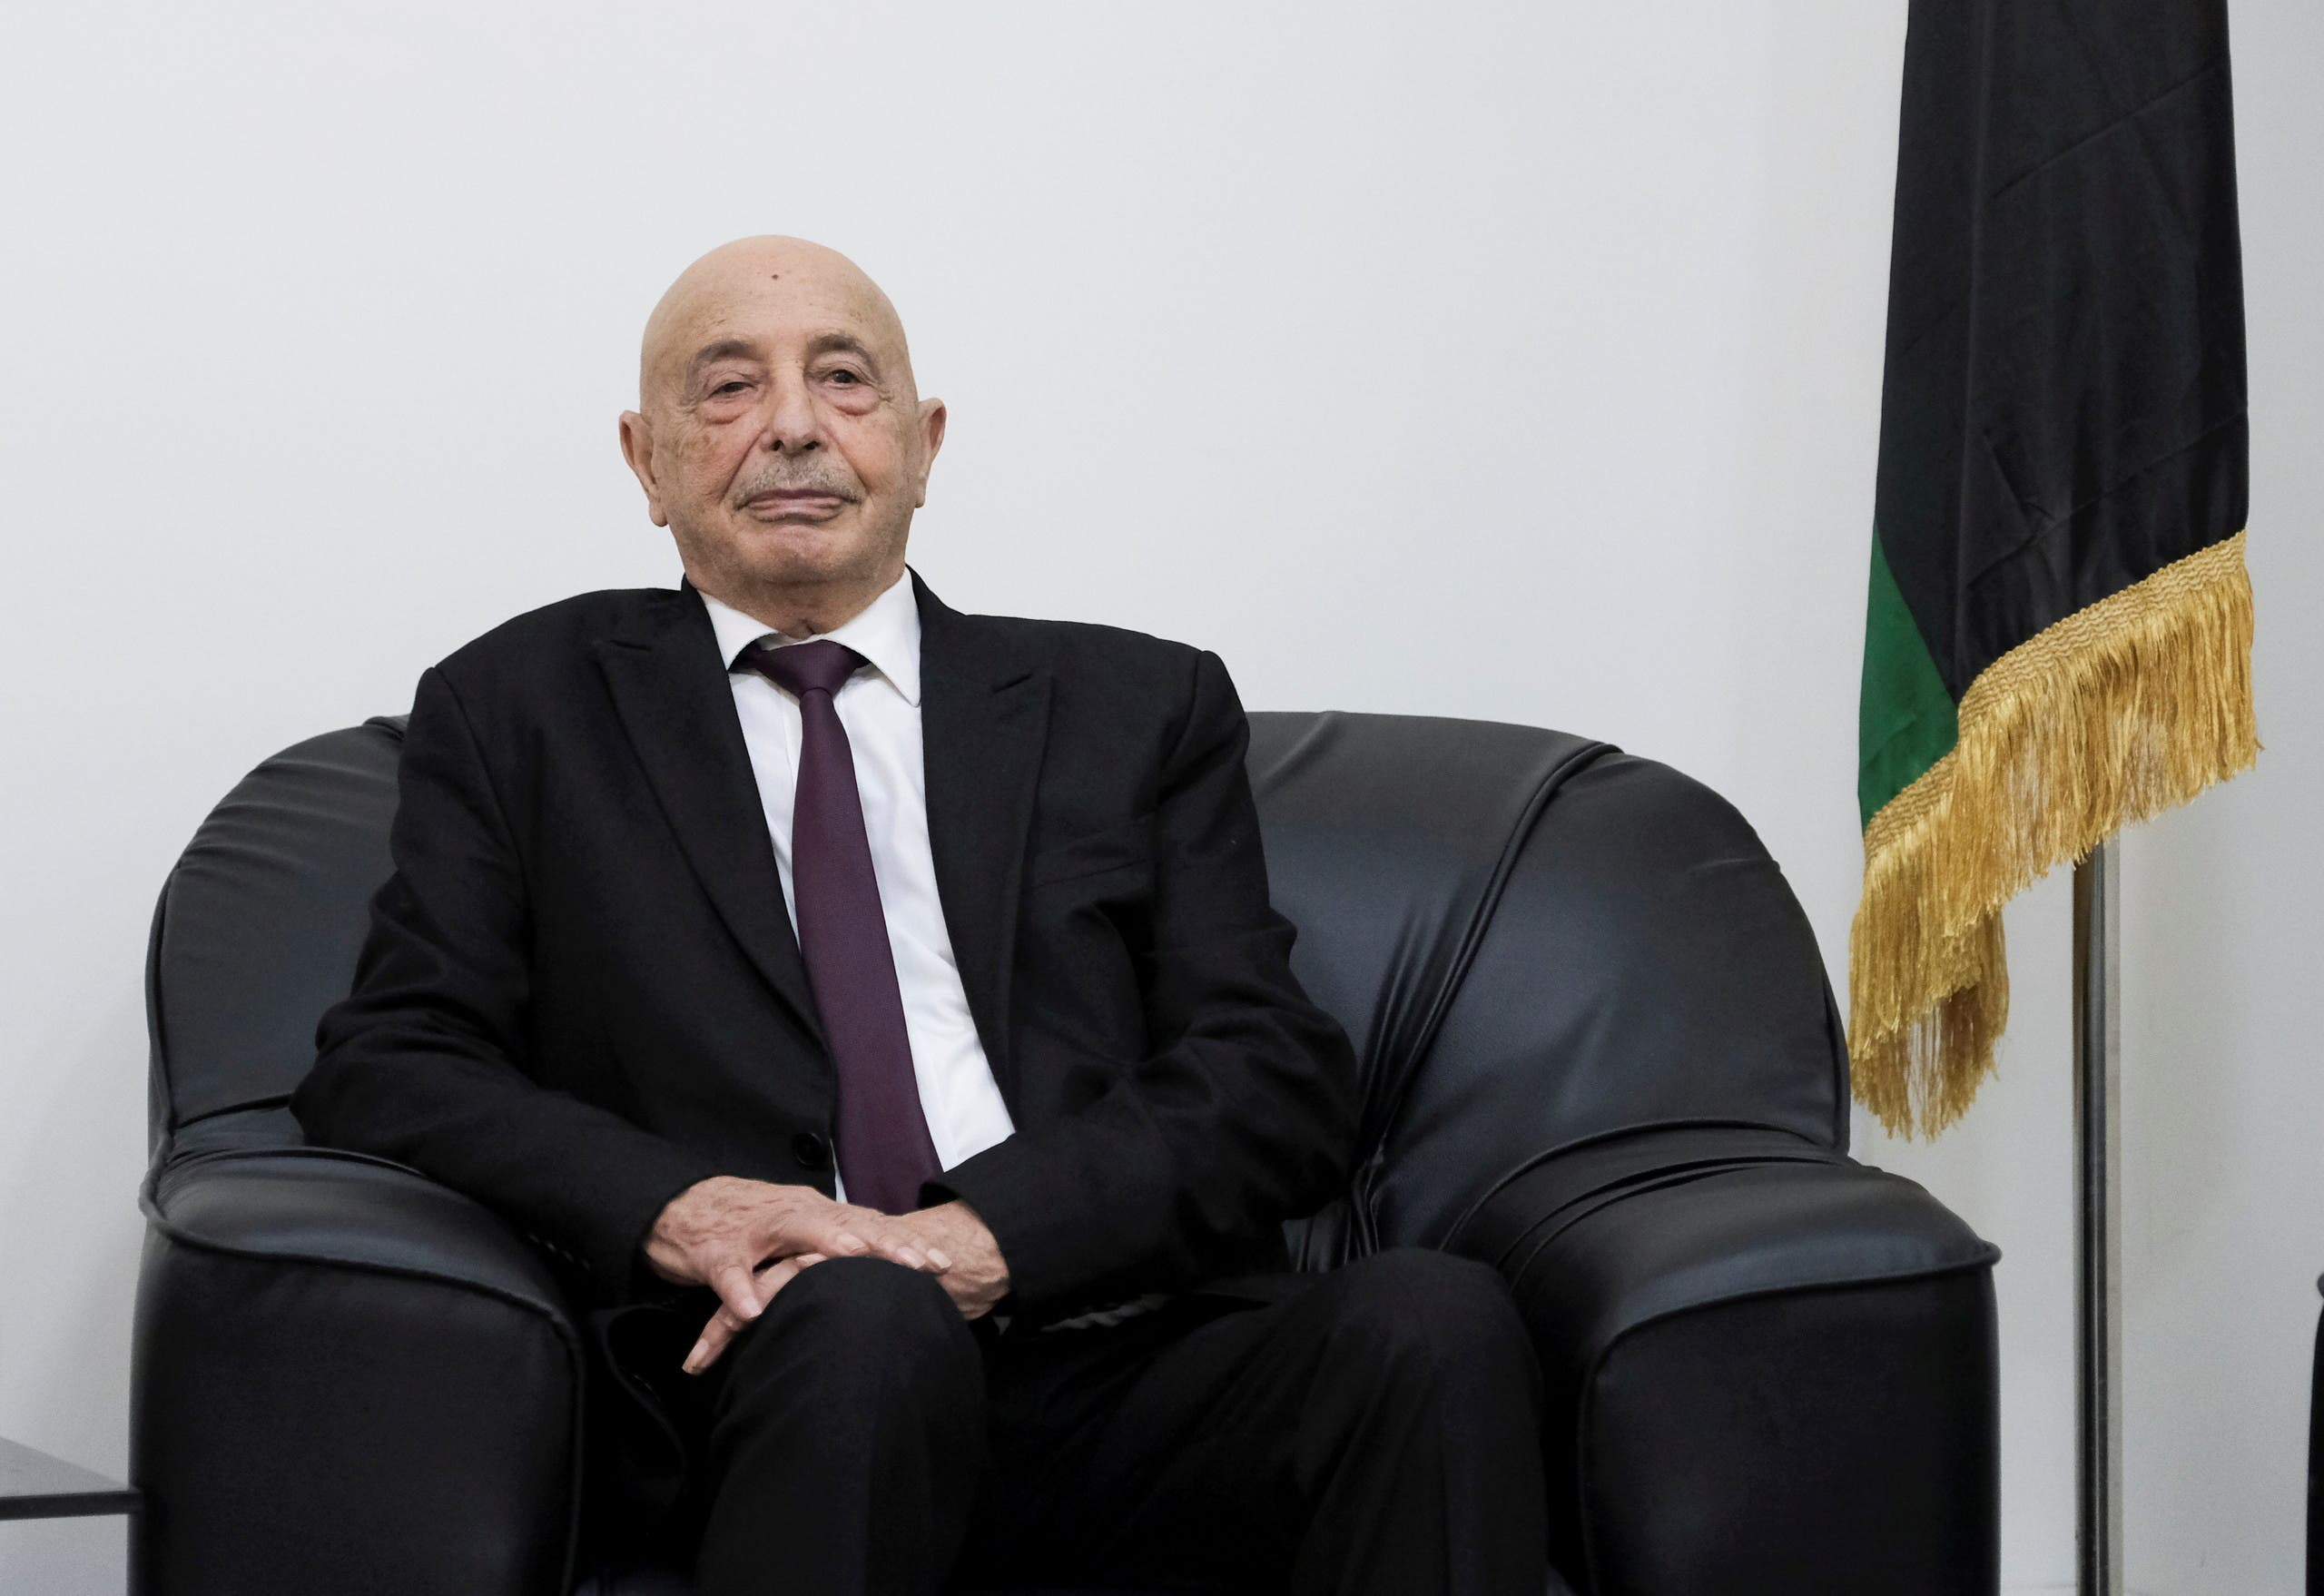 رئيس البرلمان الليبي عقيلة صالح